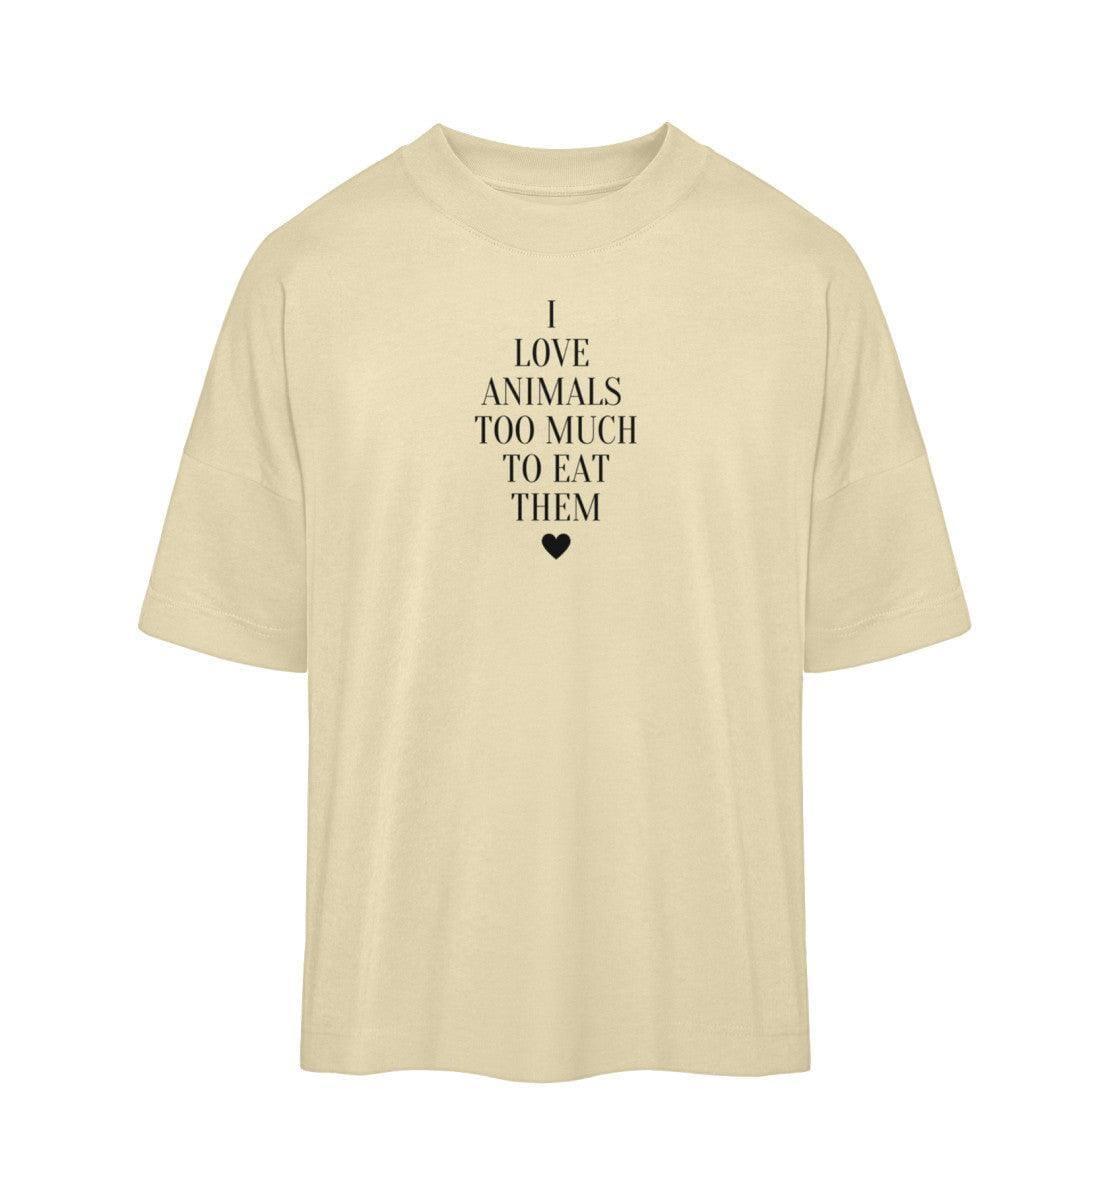 I Love Animals too much - Organic Oversized Shirt - Team Vegan © vegan t shirt